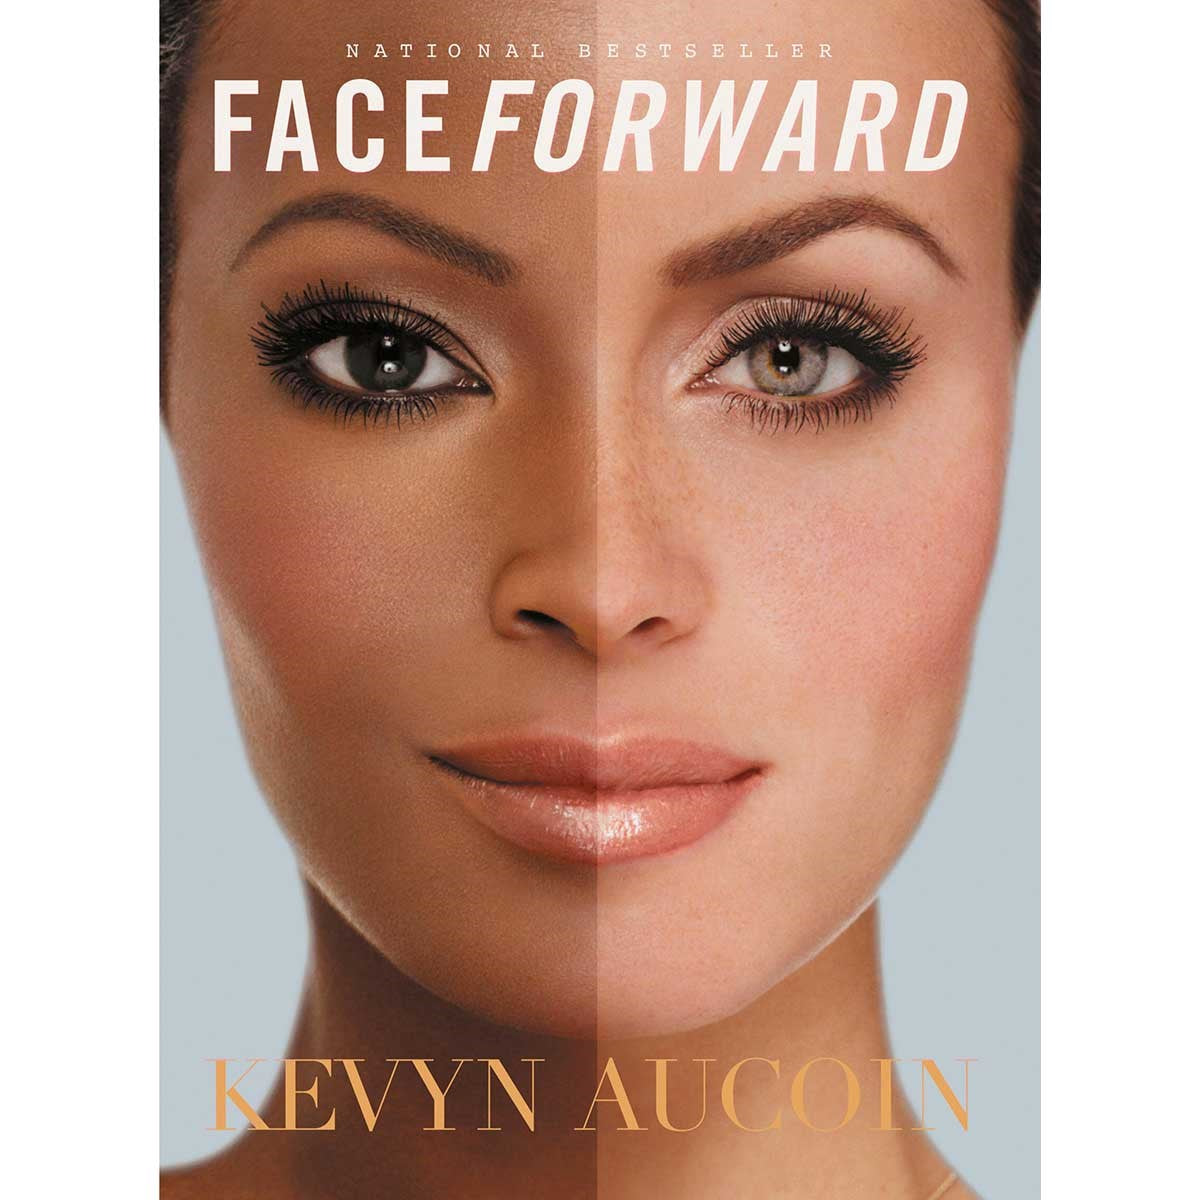 Makeup Books | Kevyn Aucoin Beauty